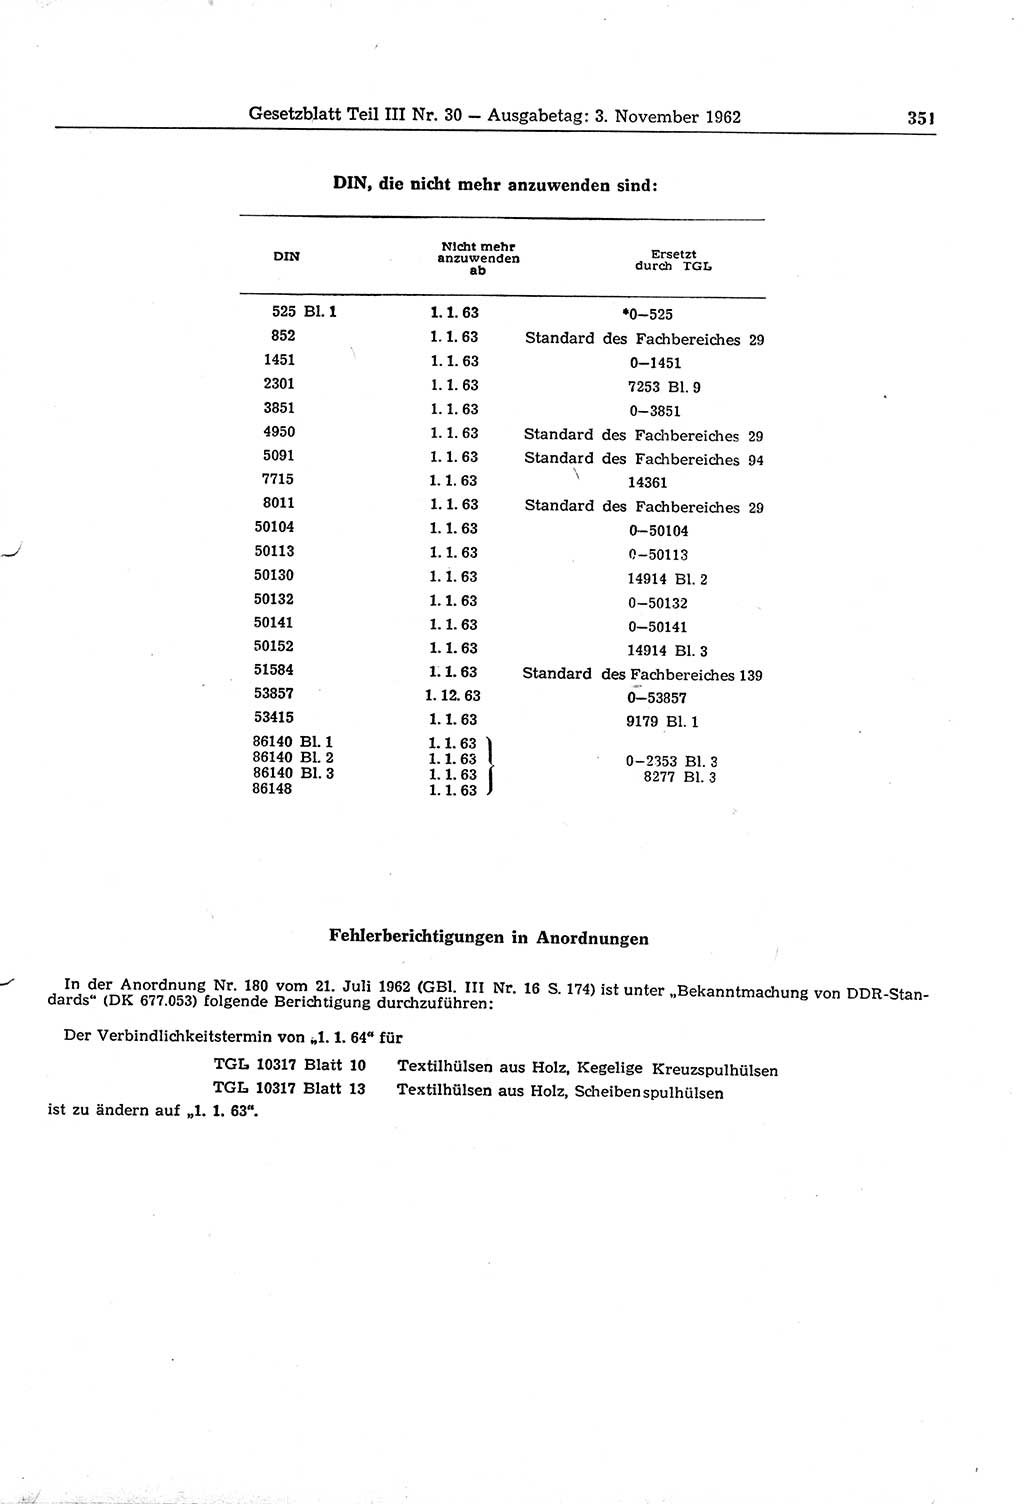 Gesetzblatt (GBl.) der Deutschen Demokratischen Republik (DDR) Teil ⅠⅠⅠ 1962, Seite 351 (GBl. DDR ⅠⅠⅠ 1962, S. 351)